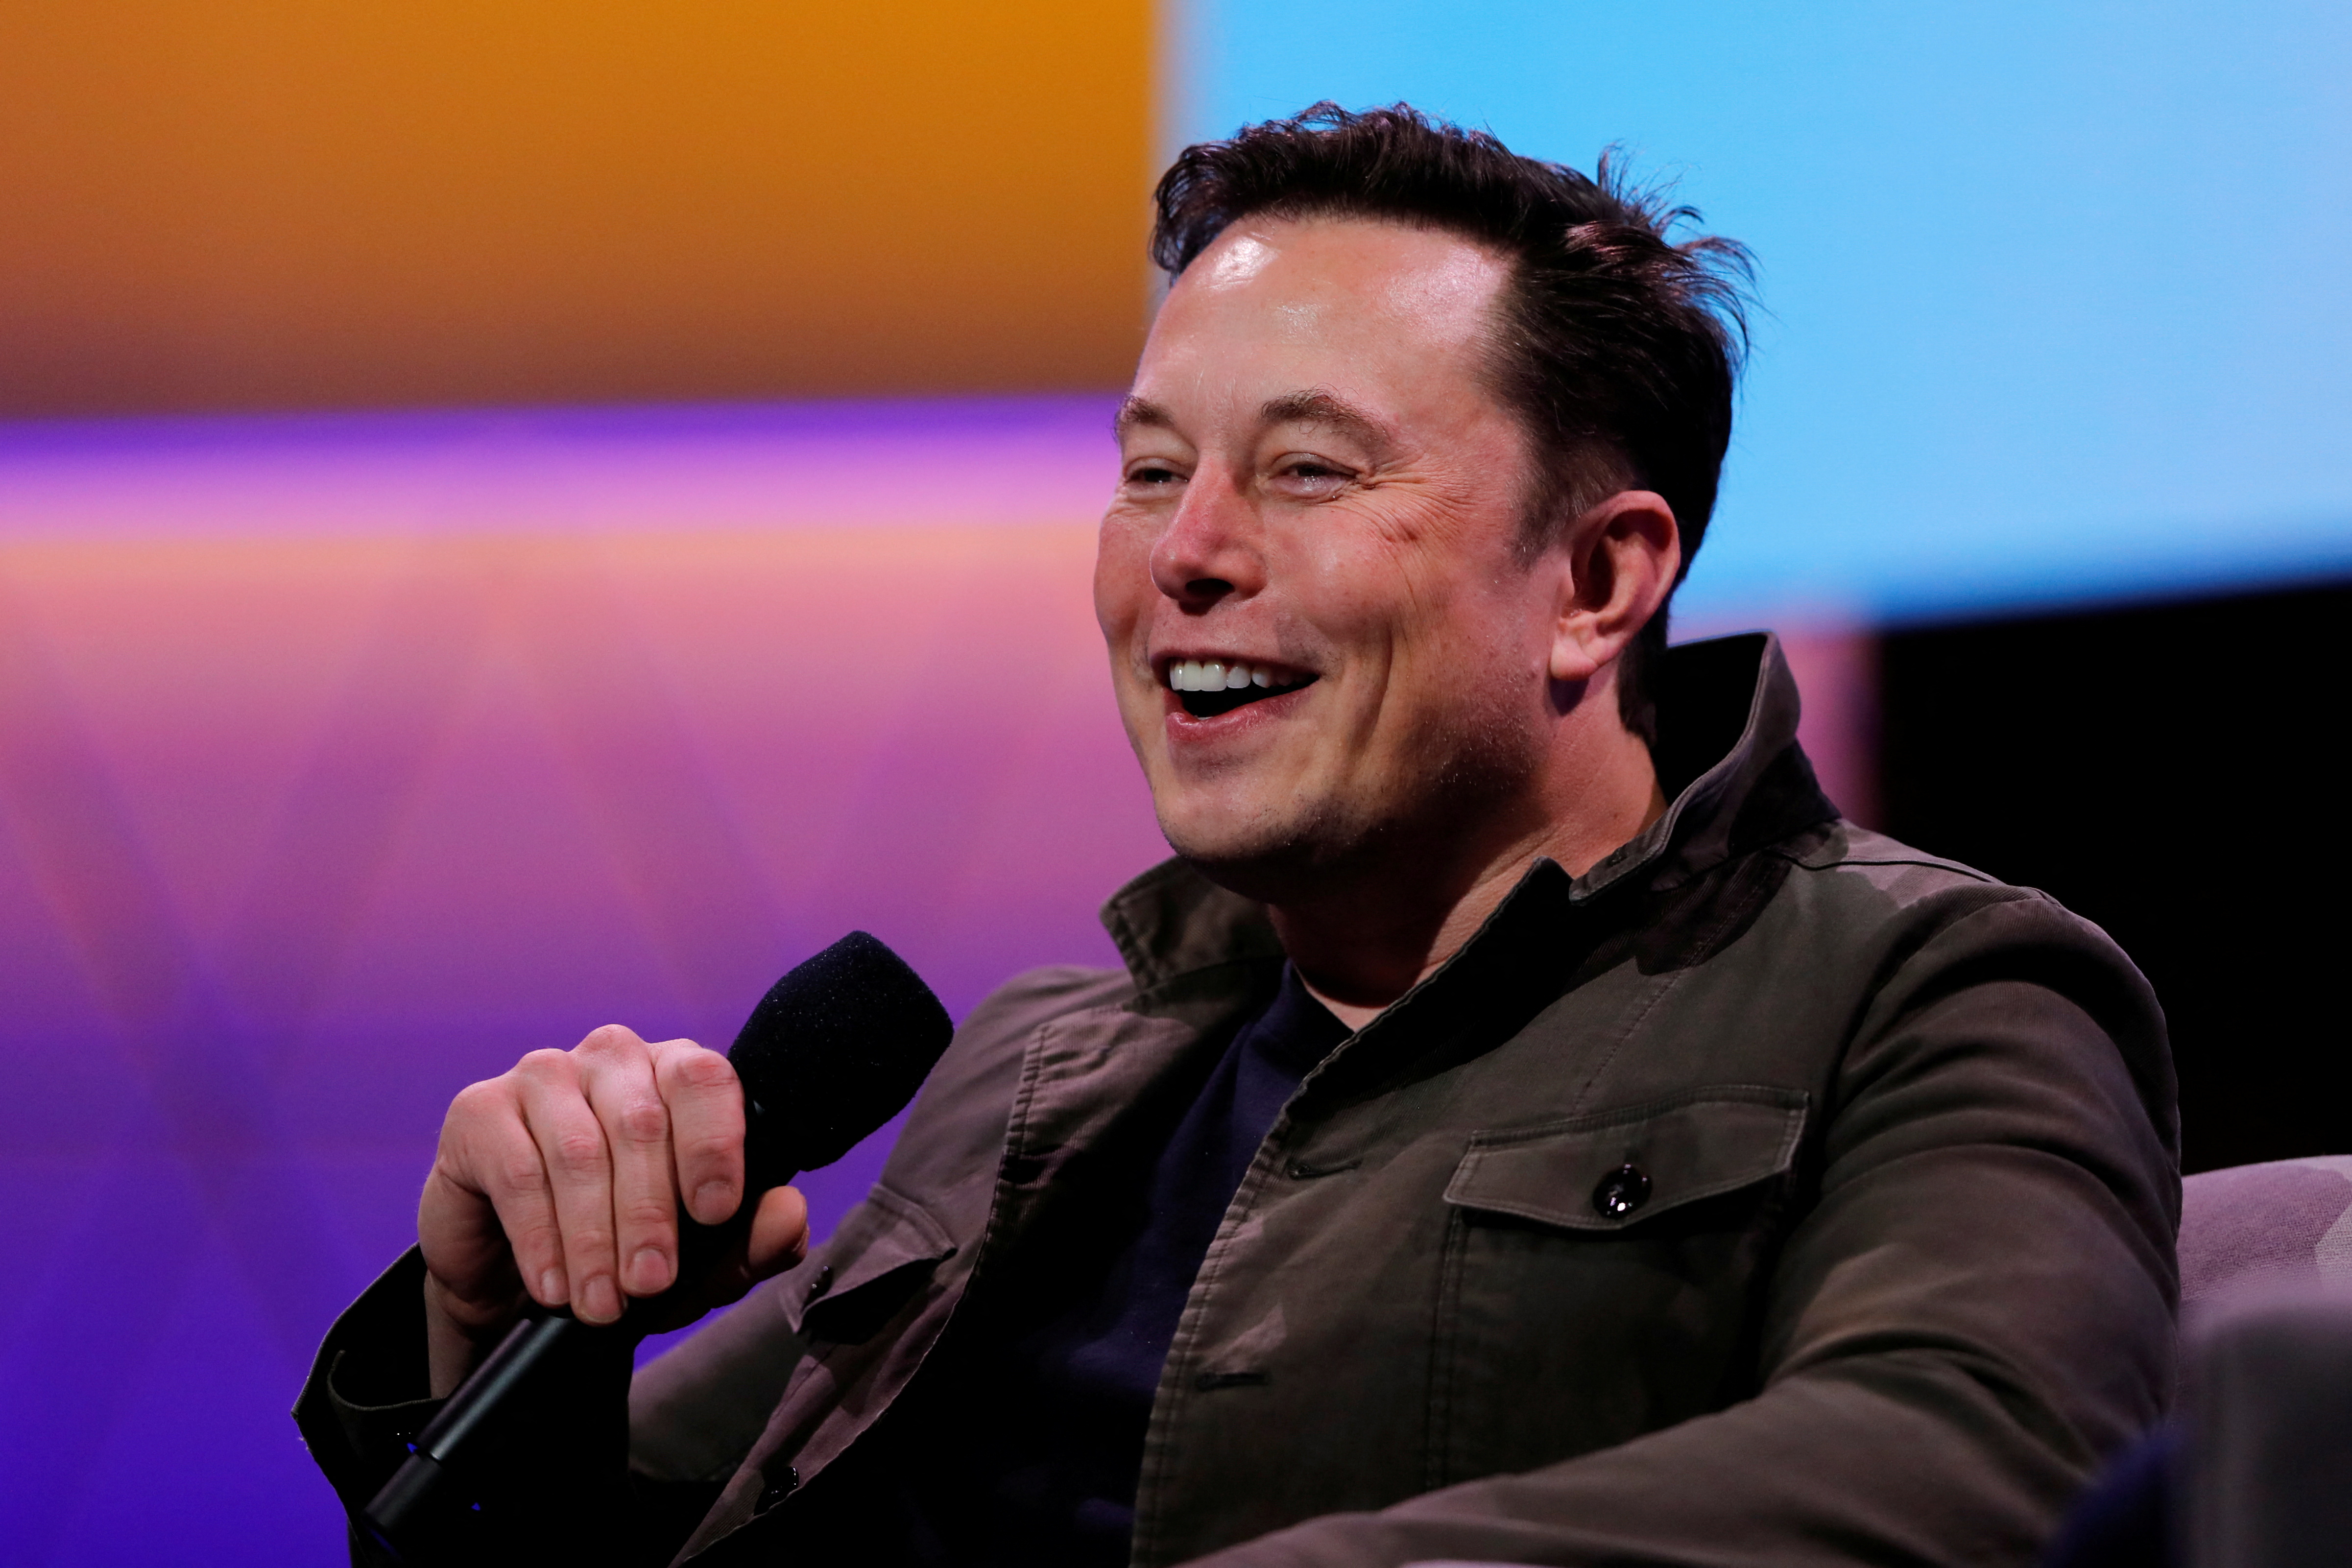 Foto de archivo: Elon Musk, dueño de SpaceX, Starlink y Tesla, durante una conferencia en Los Ángeles, California
